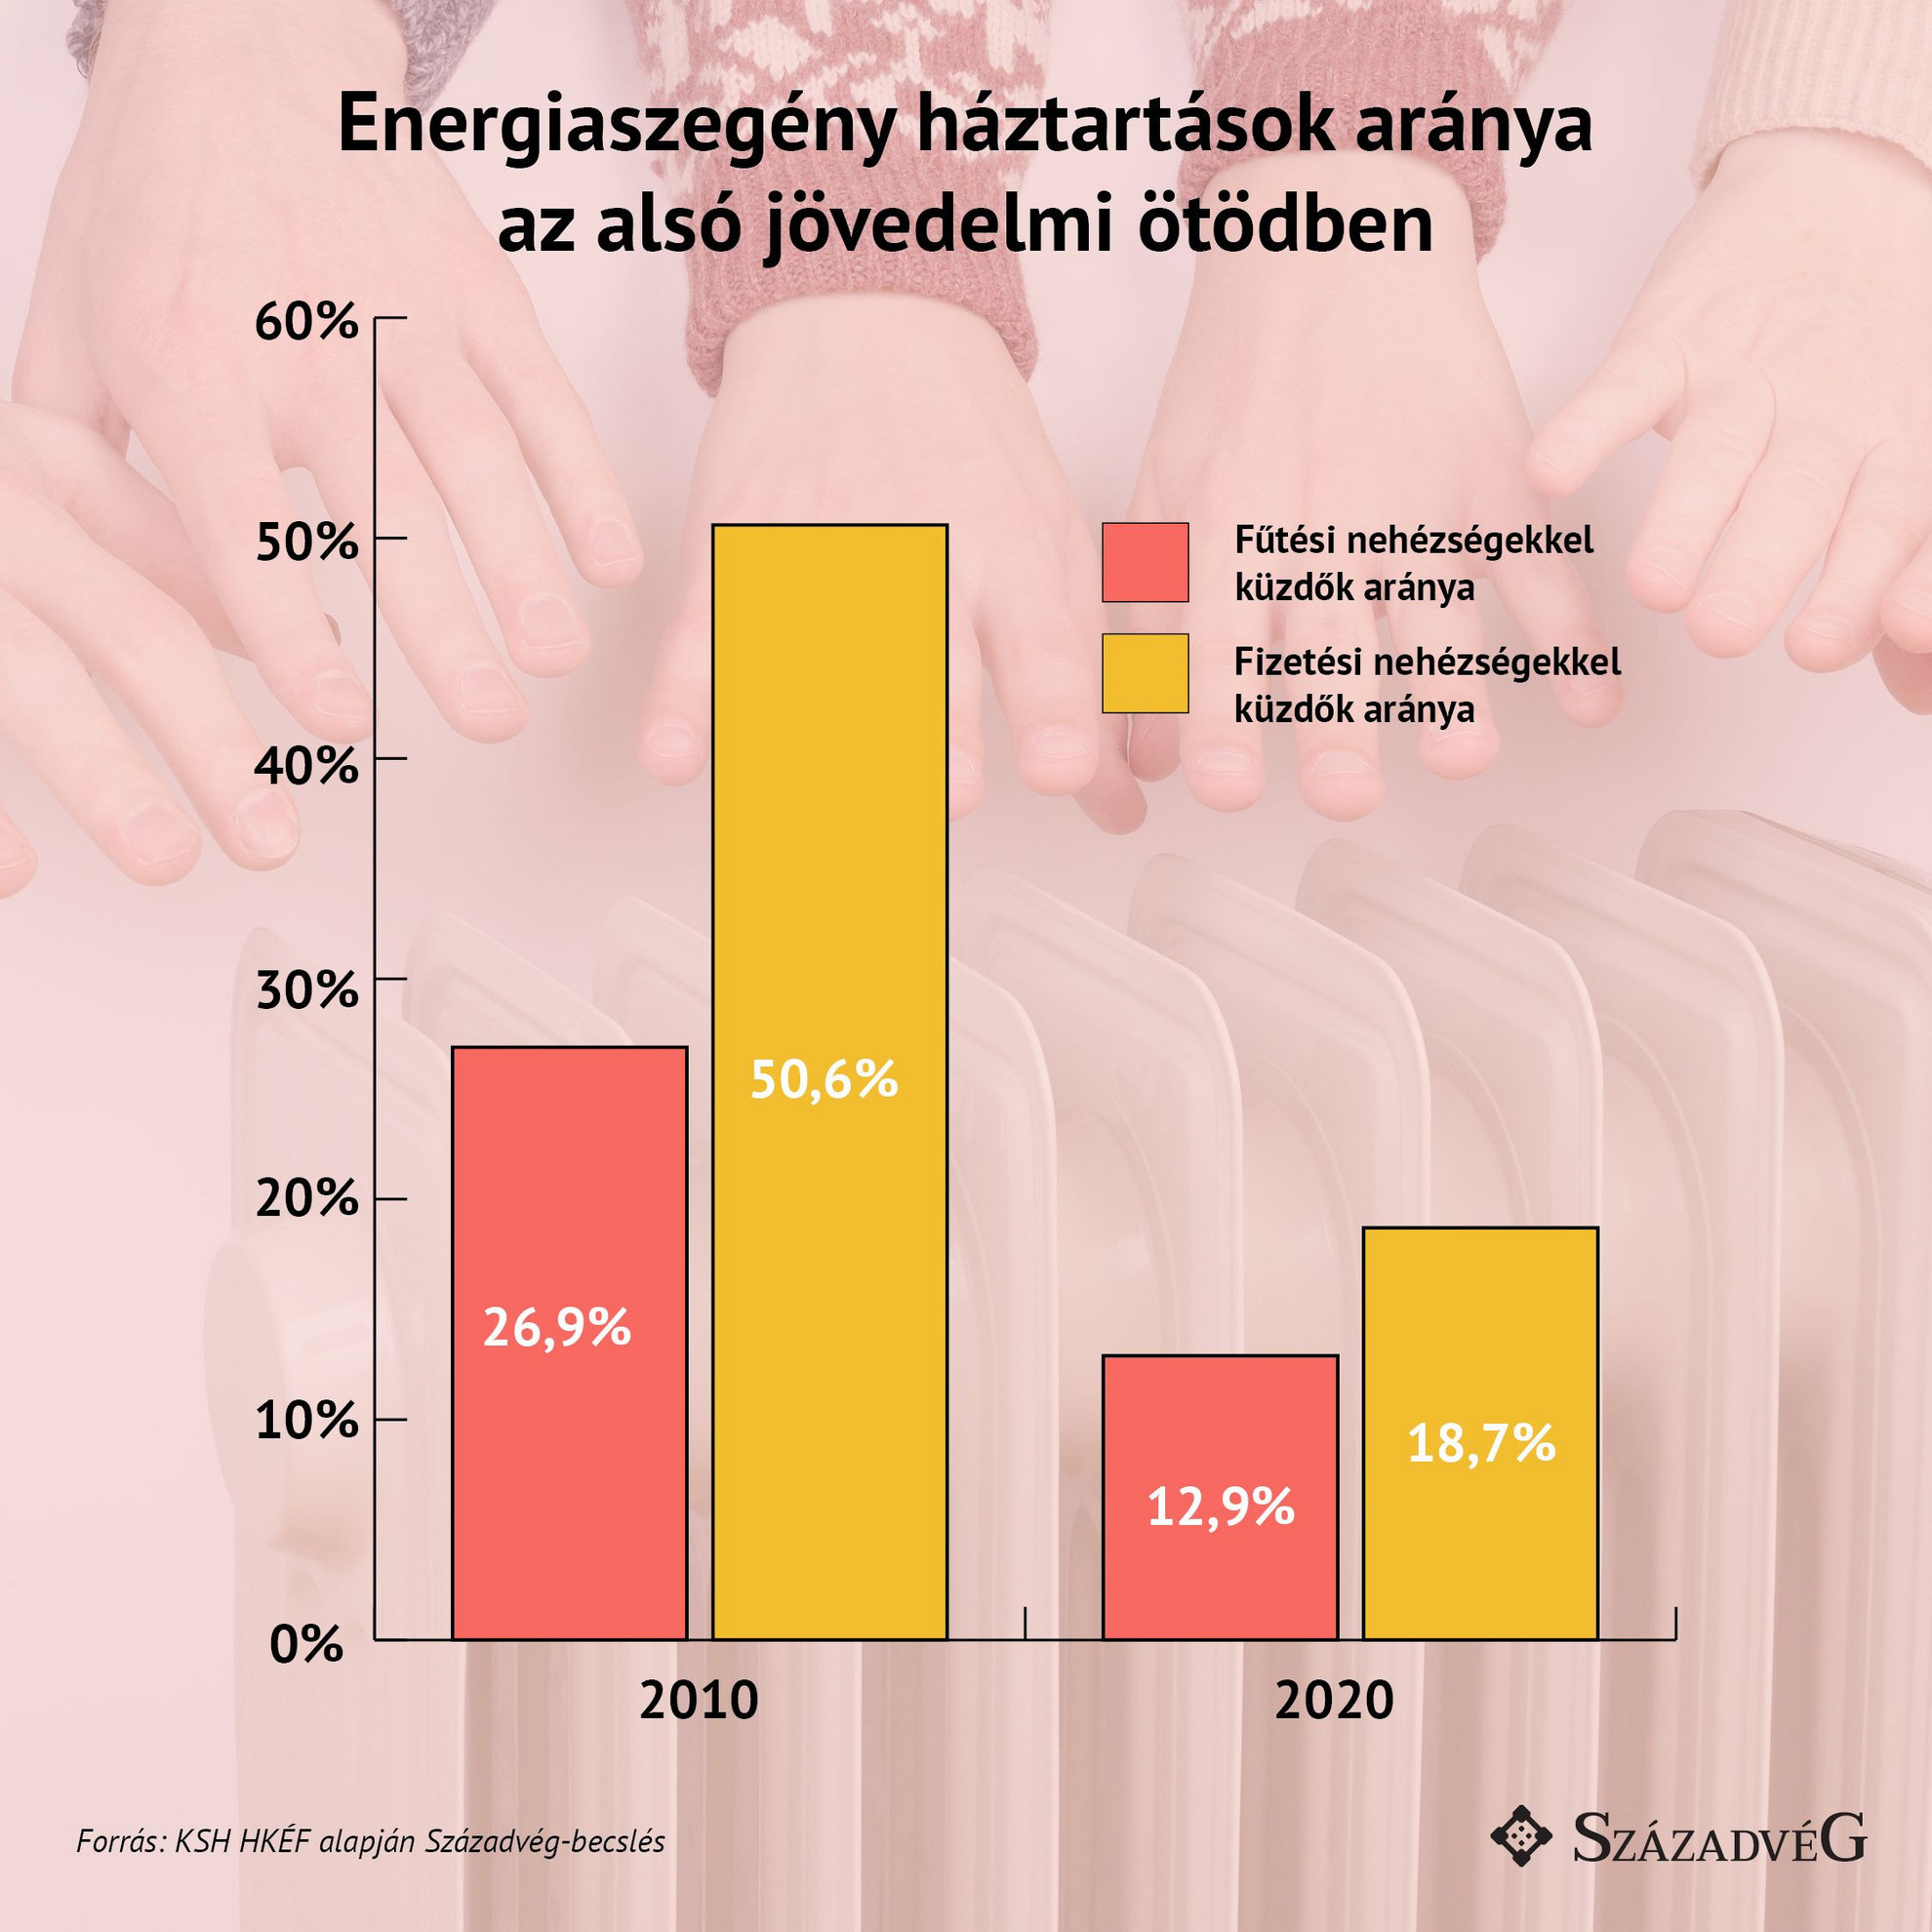 Tíz év alatt kevesebb mint a felére csökkent az energiaszegény háztartások aránya